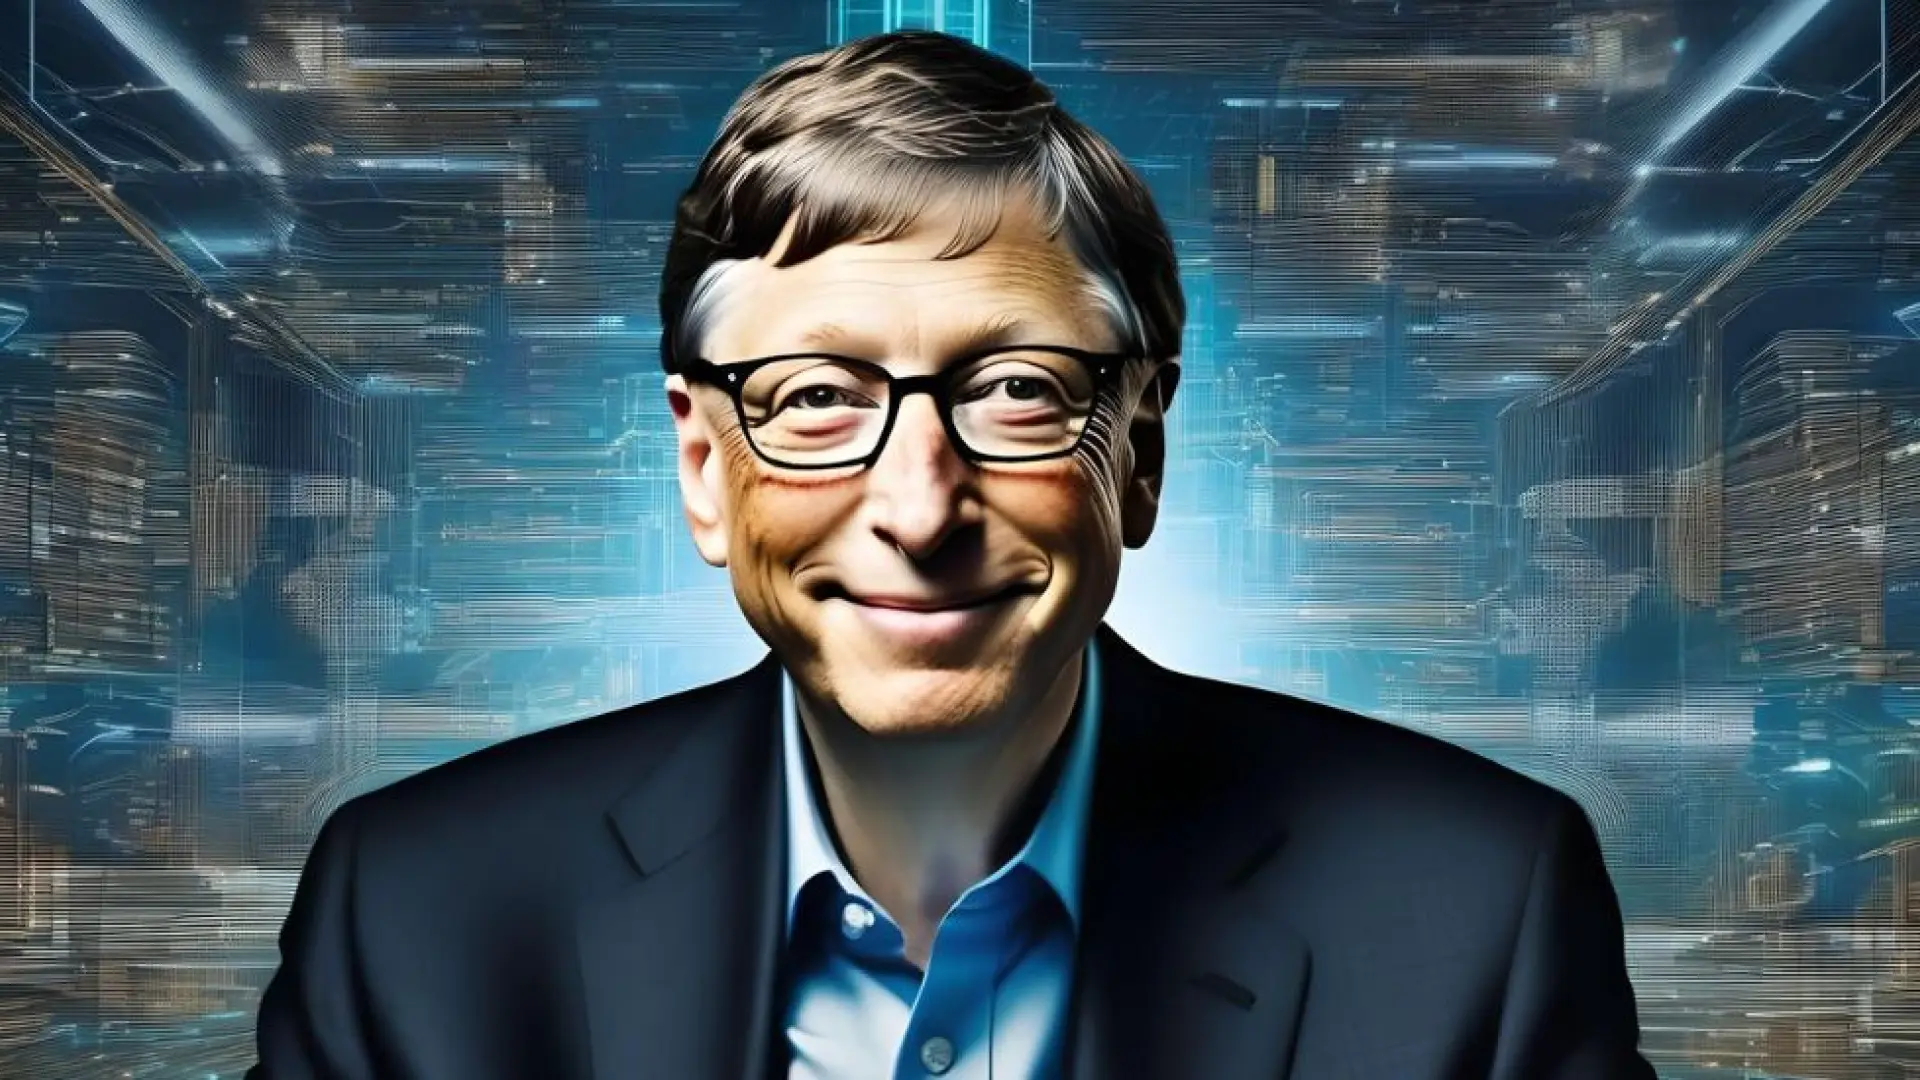 Bill Gates confiesa que la IA podría quitarle su puesto de trabajo